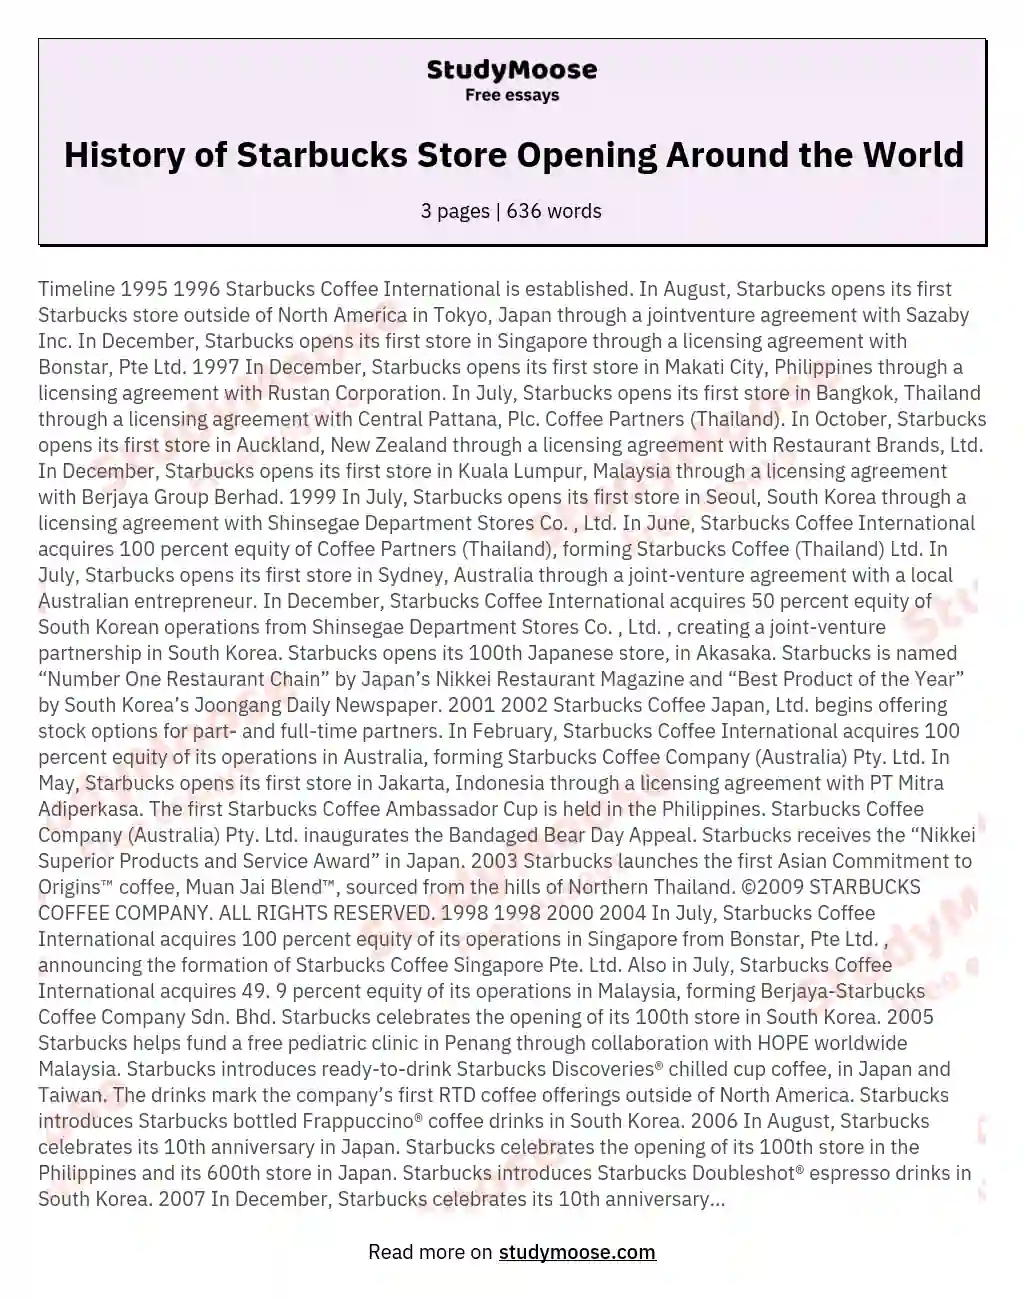 History of Starbucks Store Opening Around the World essay